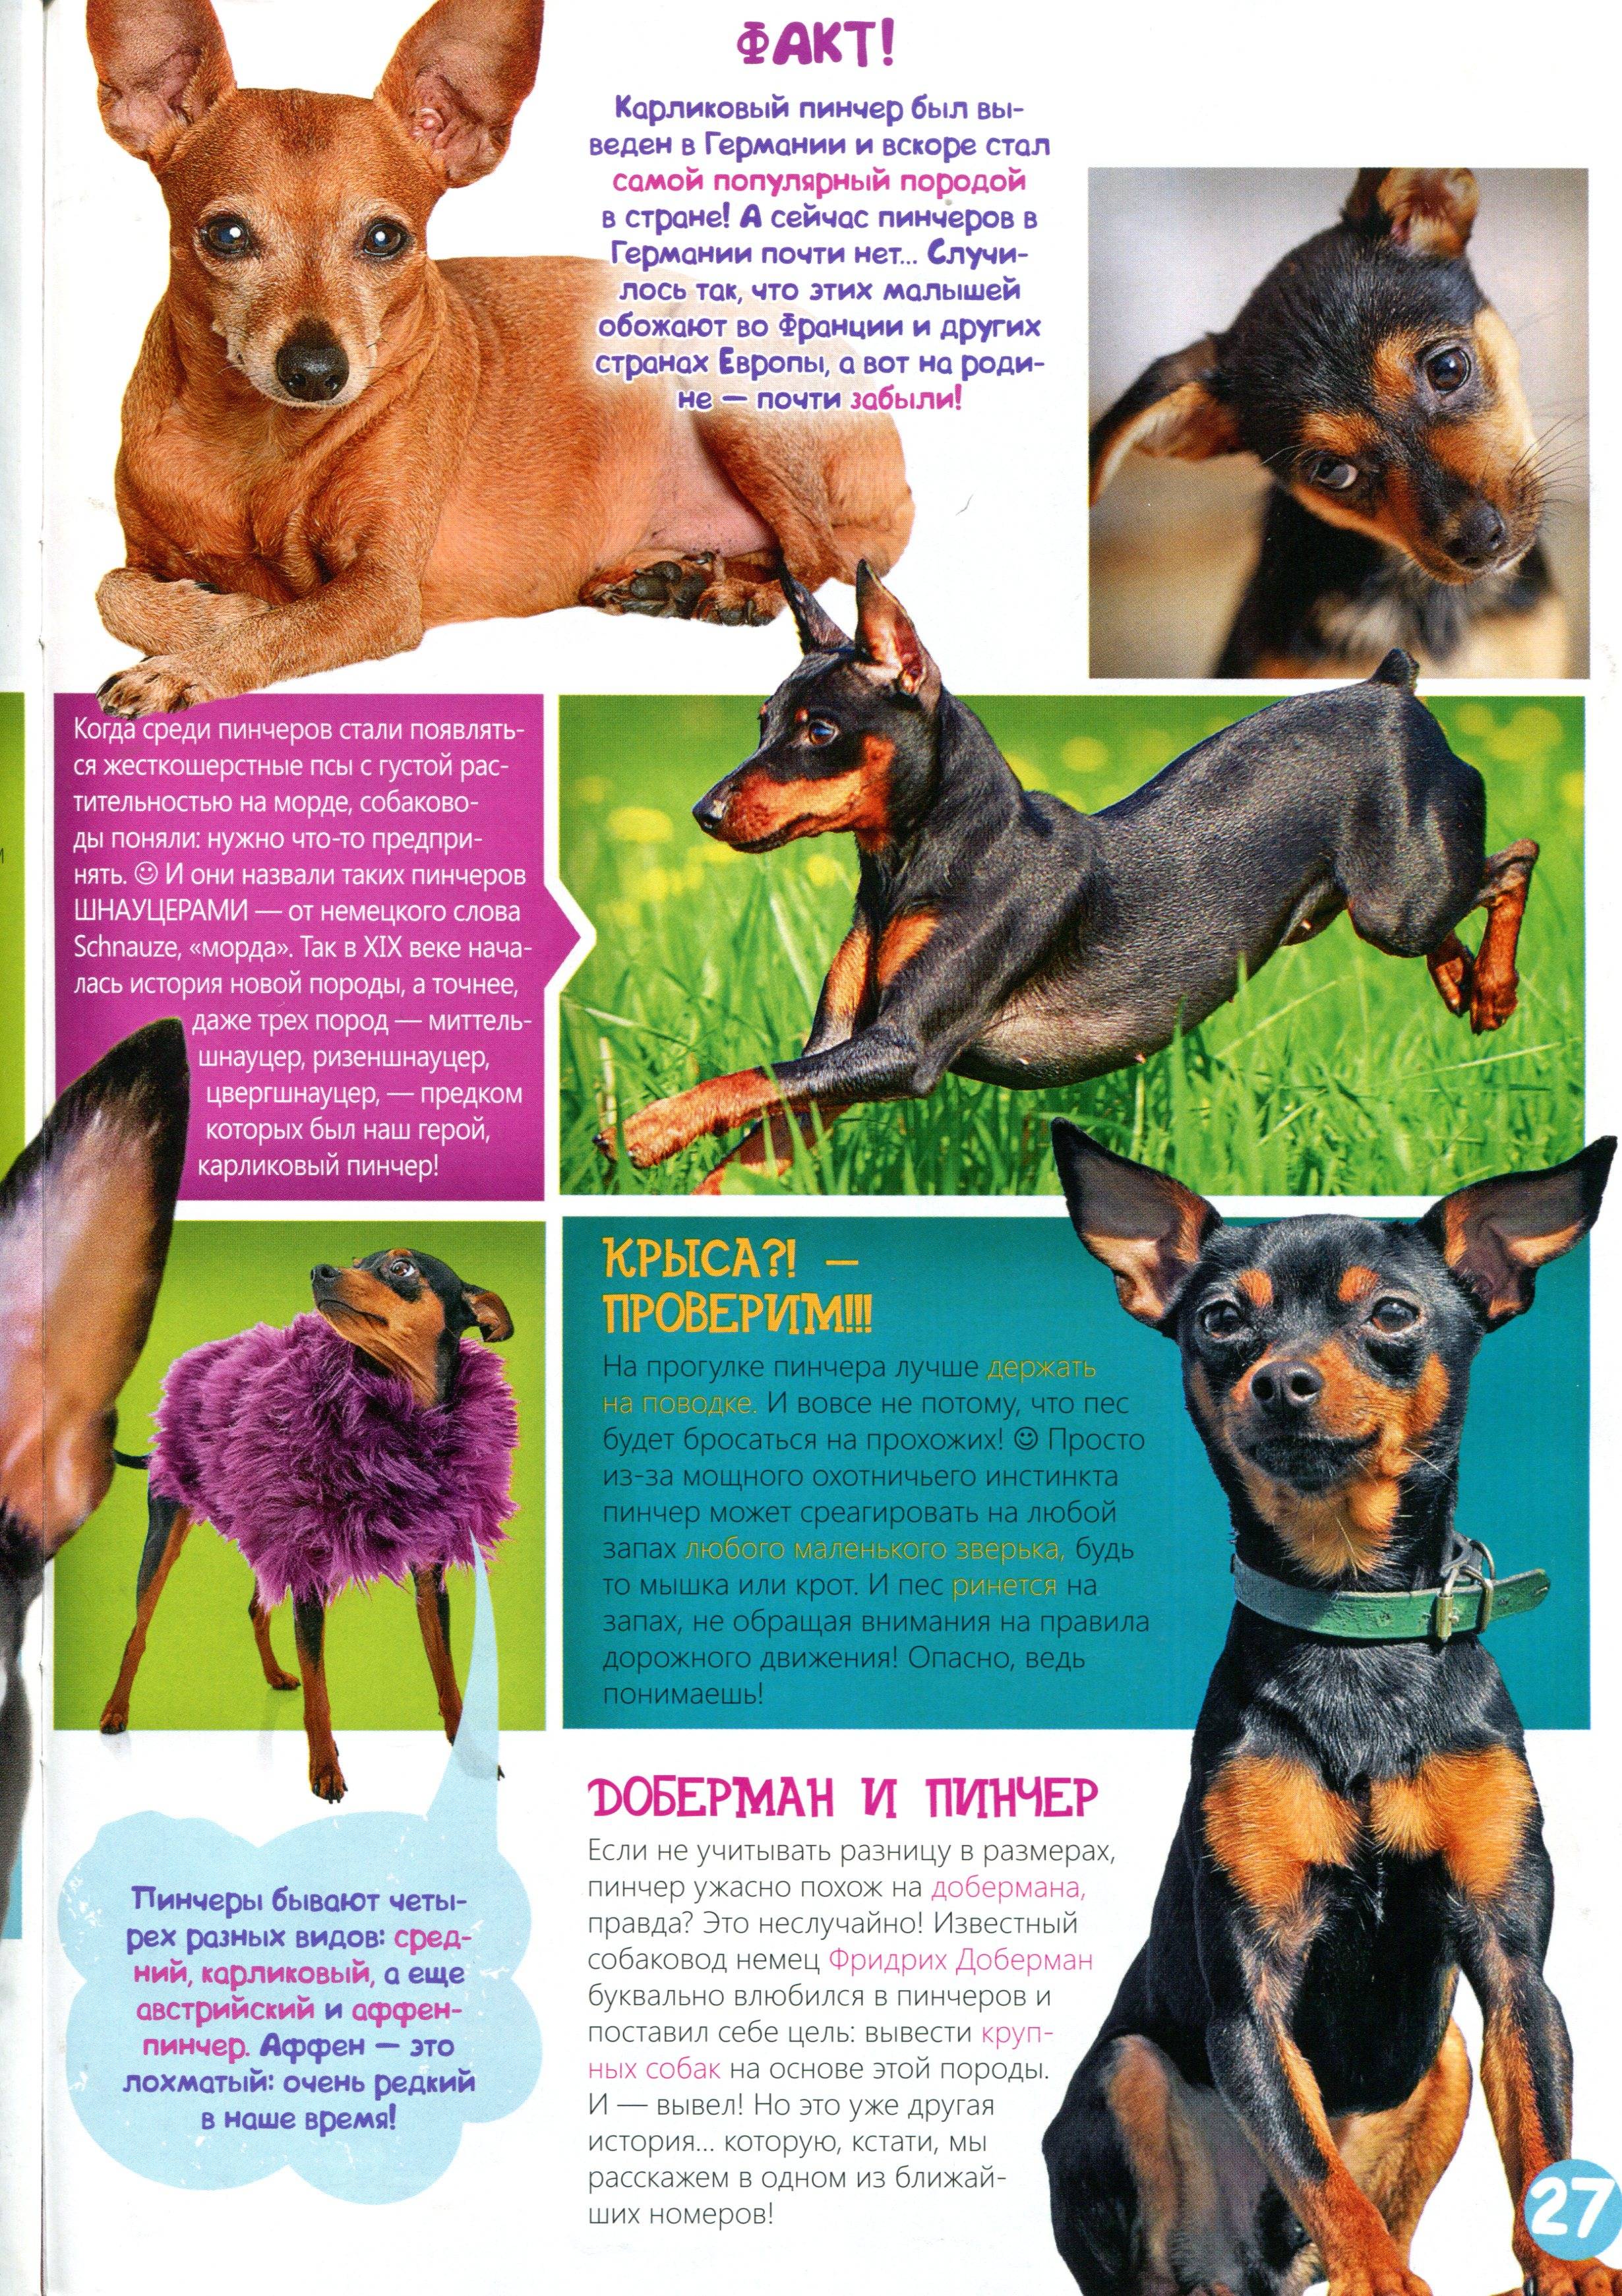 Описание собак породы цвергпинчер и отзывы владельцев карликовых пинчеров